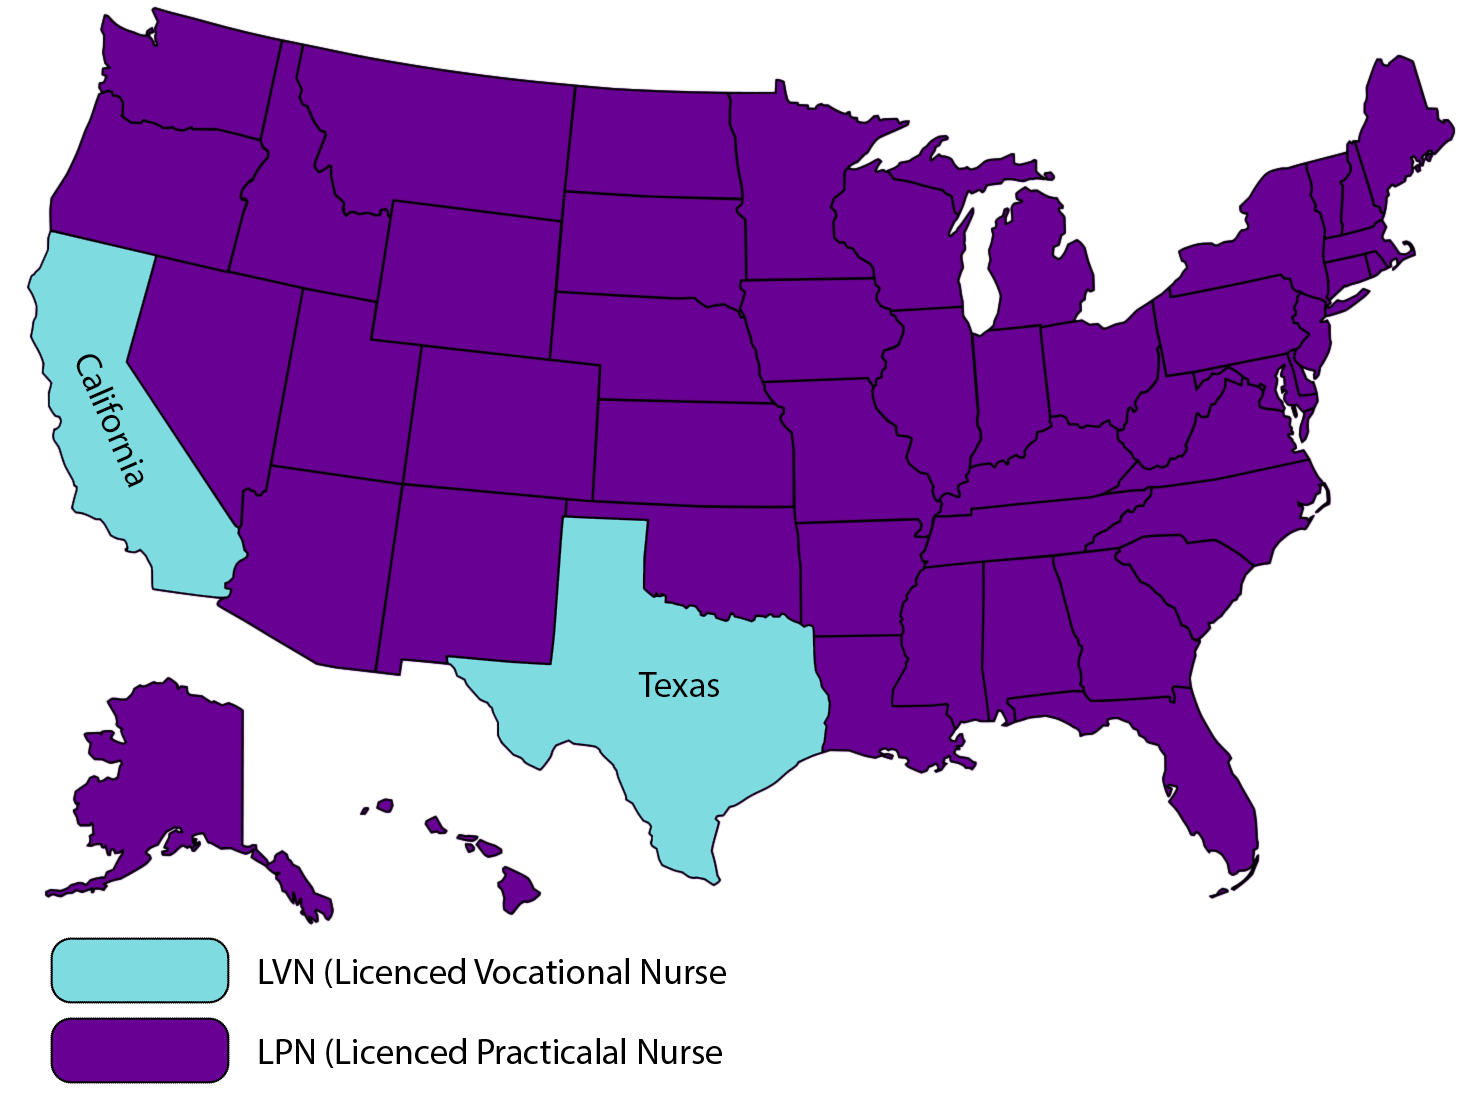 California and Texas LVN